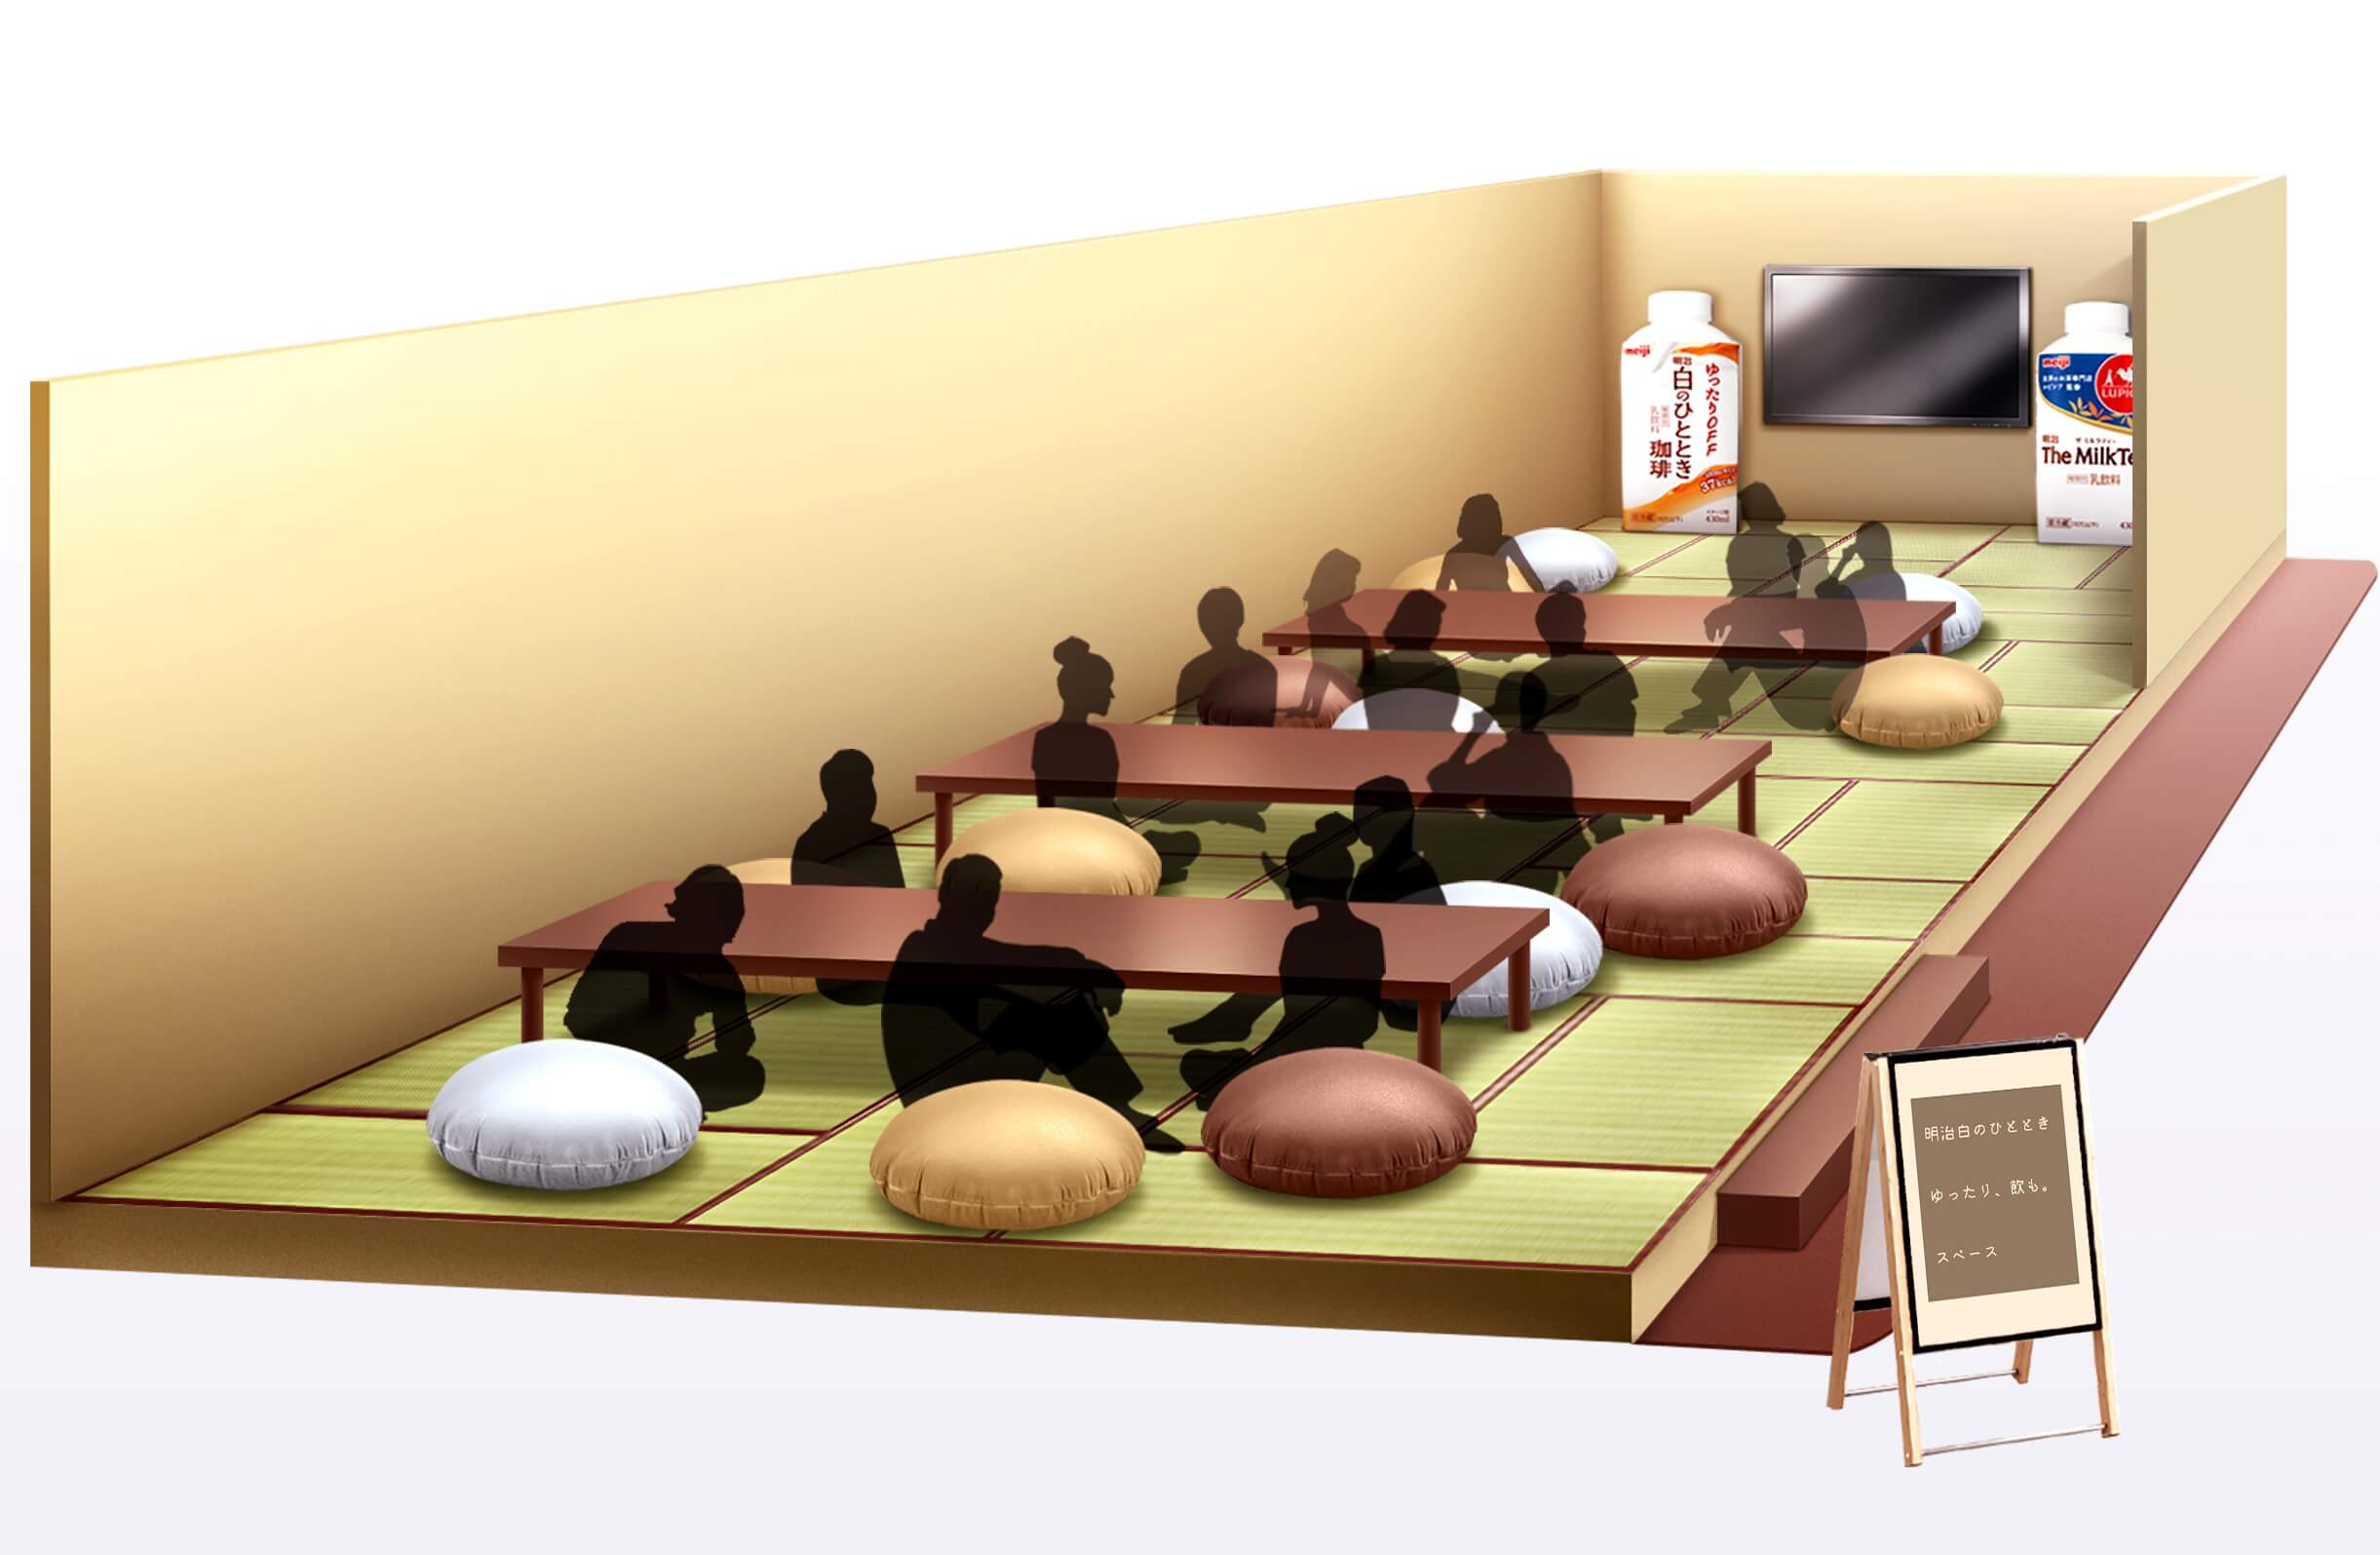 「食神さまの不思議なレストラン」展に明治特設スペースが登場　乃木坂46の胸キュン動画を放映